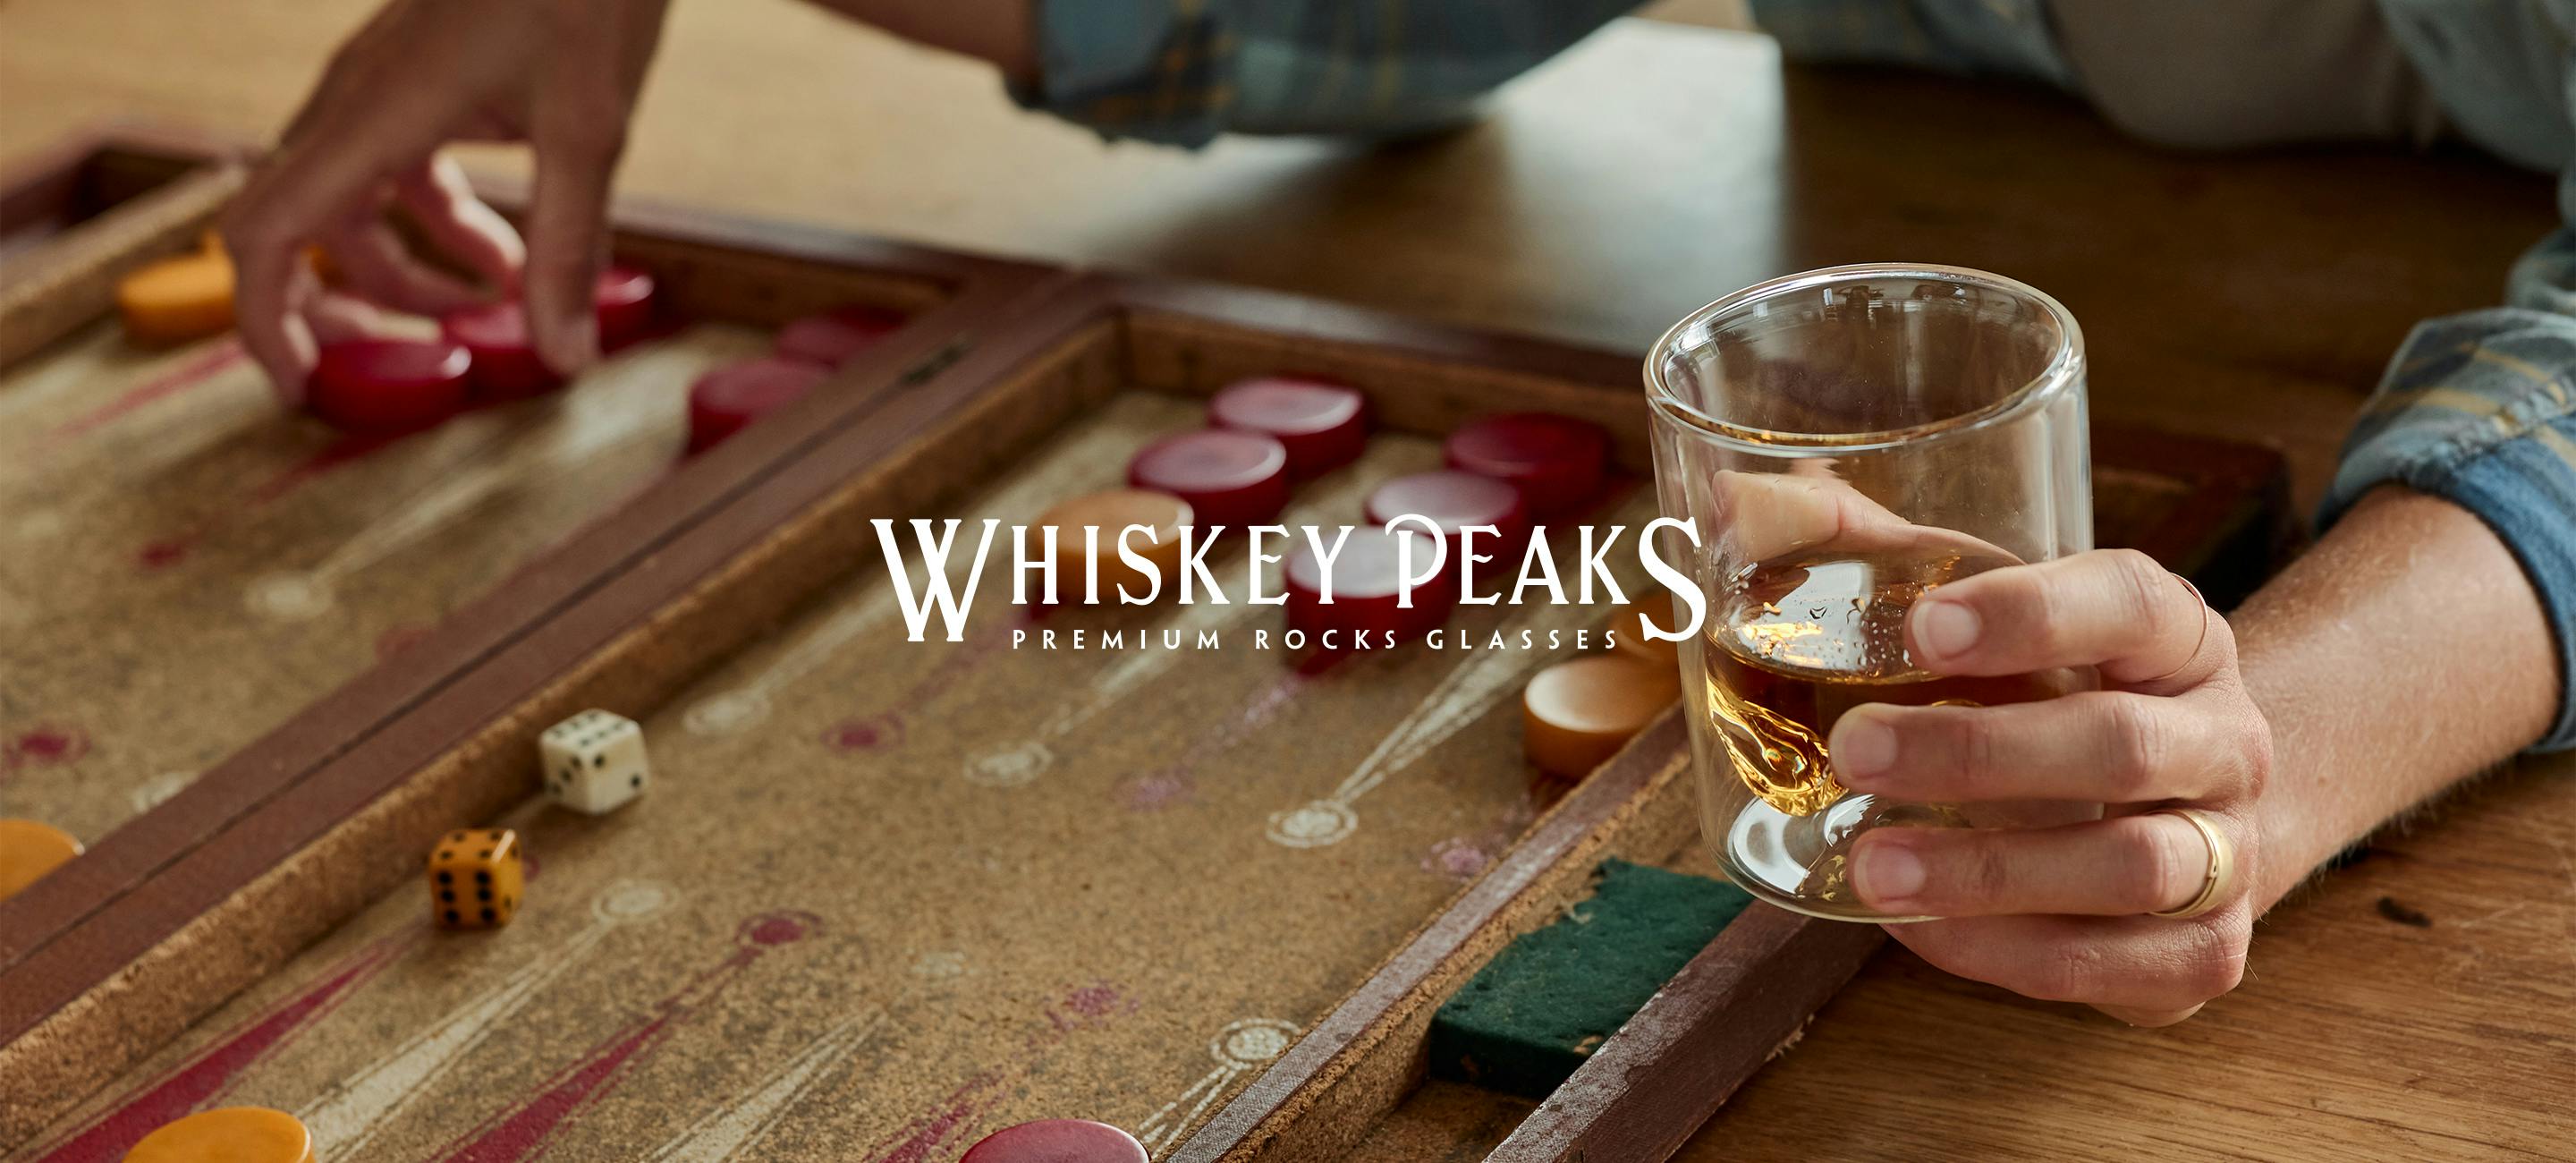 Whiskey Peaks